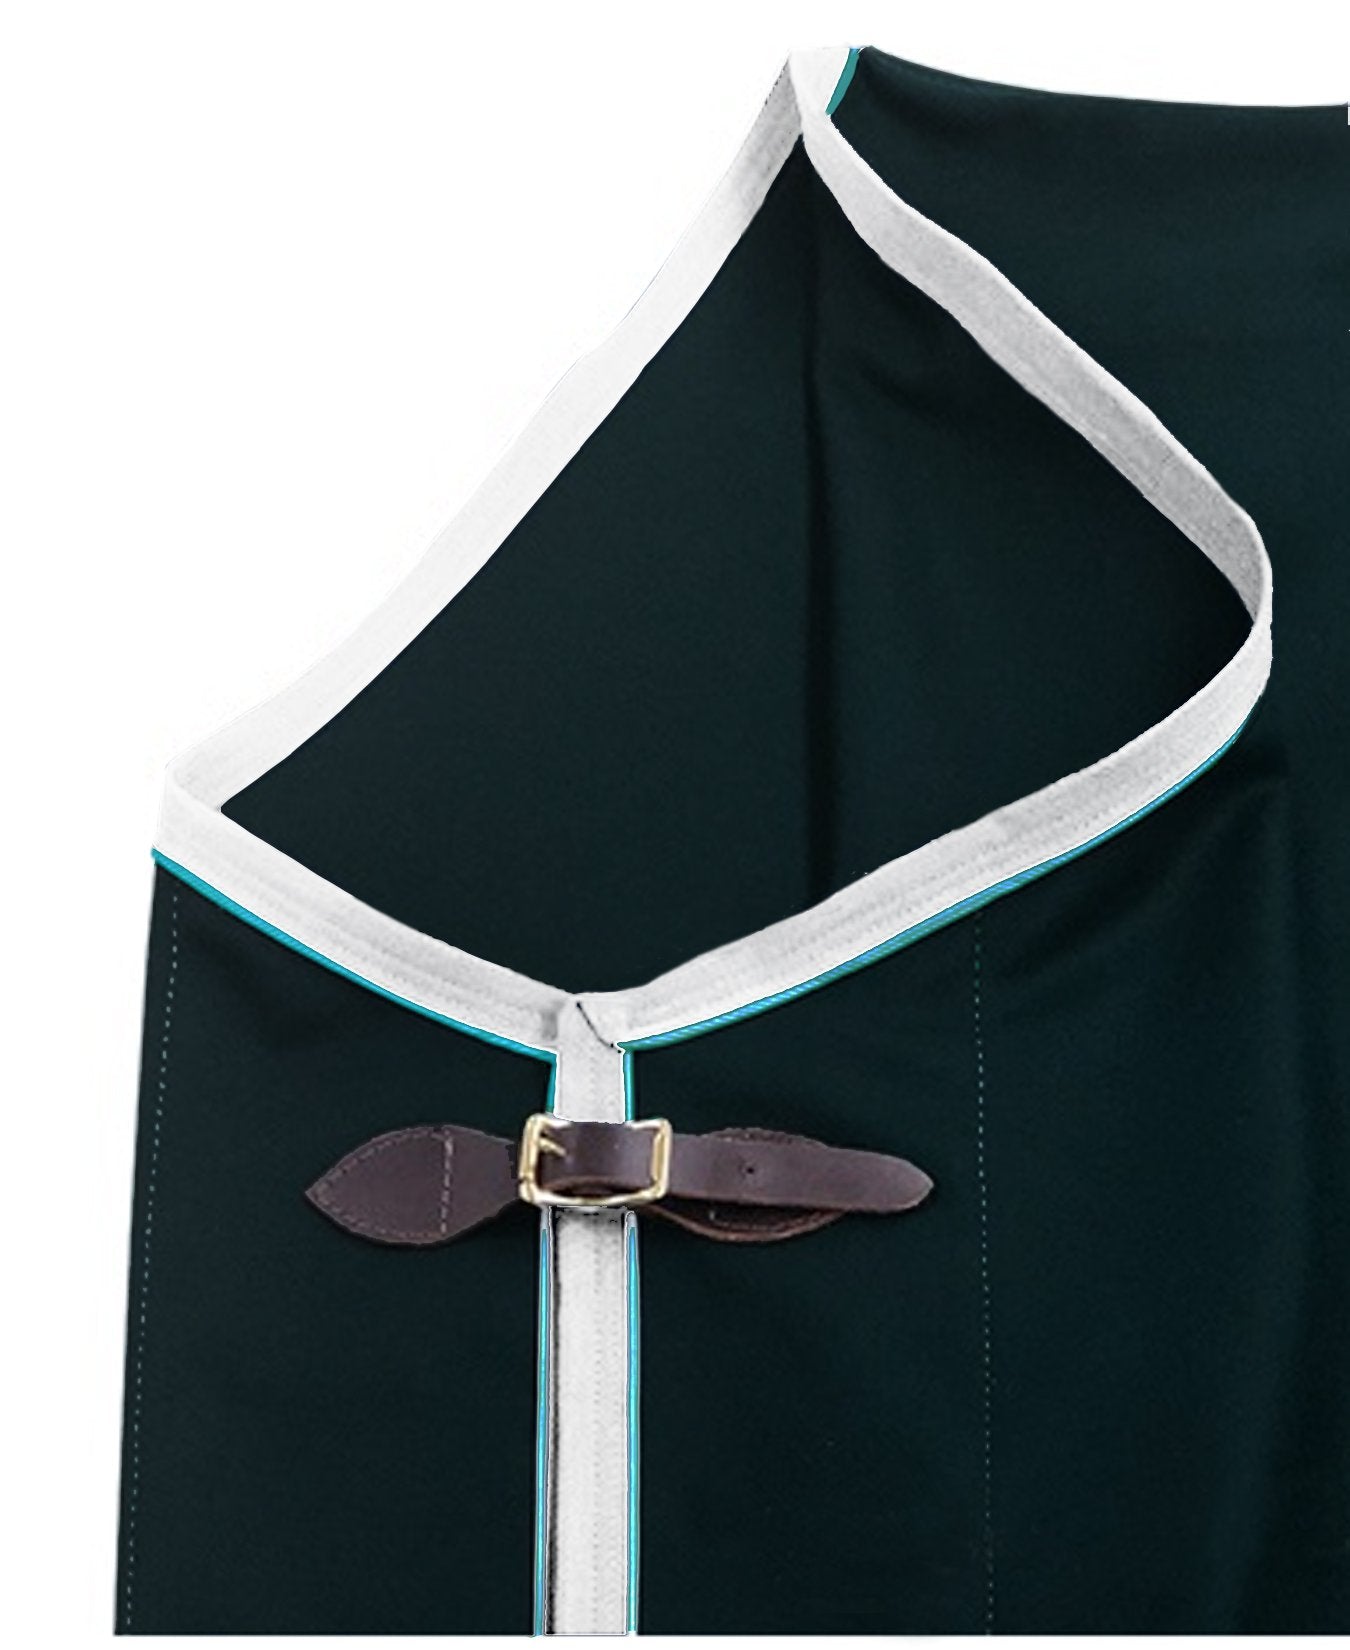 Kolowa Stables Curvon Coolerfleece Dress Sheet